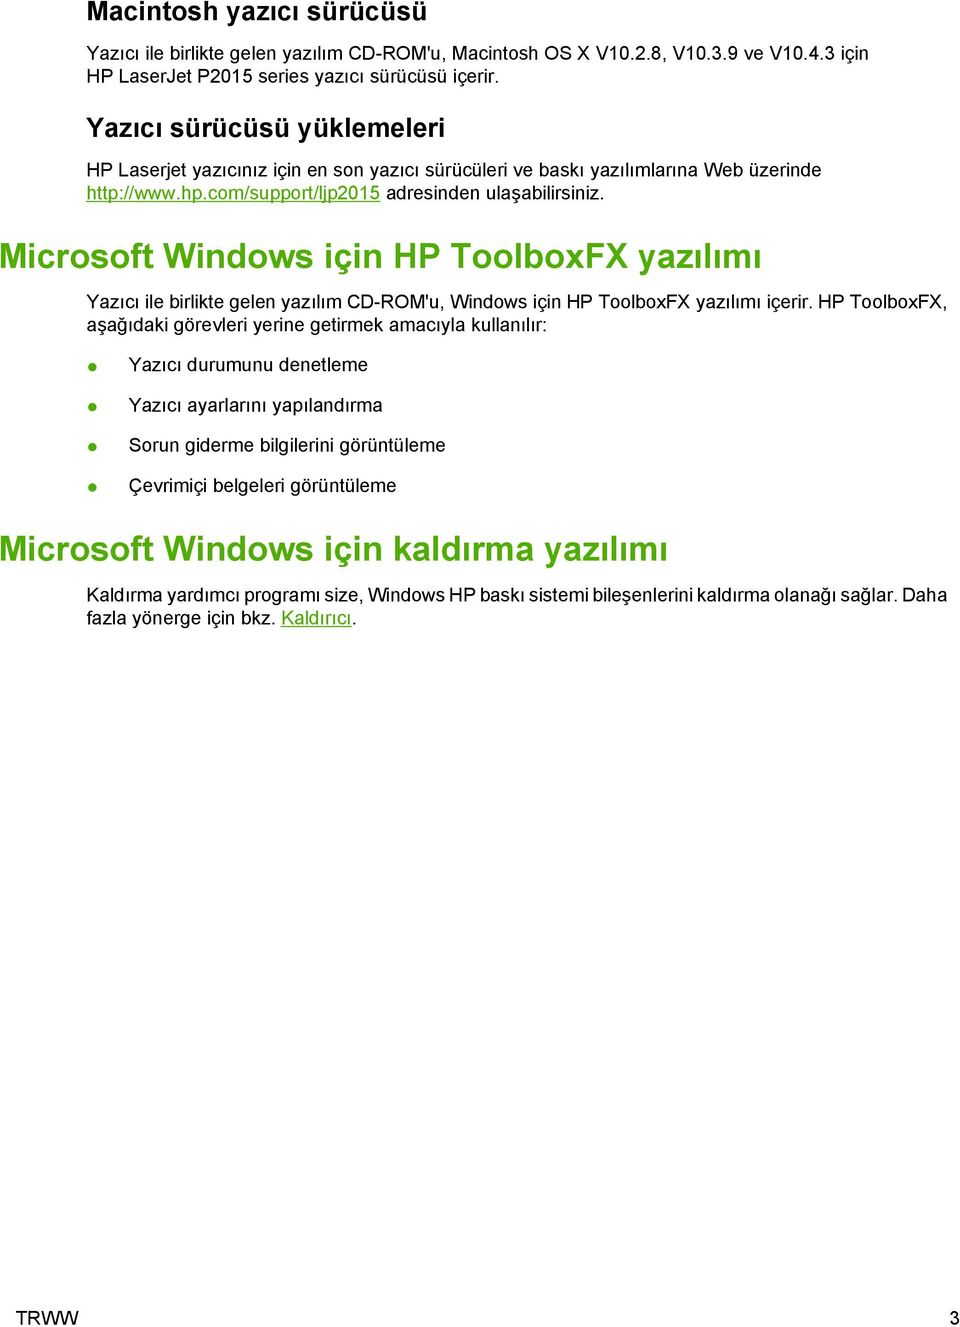 Microsoft Windows için HP ToolboxFX yazılımı Yazıcı ile birlikte gelen yazılım CD-ROM'u, Windows için HP ToolboxFX yazılımı içerir.